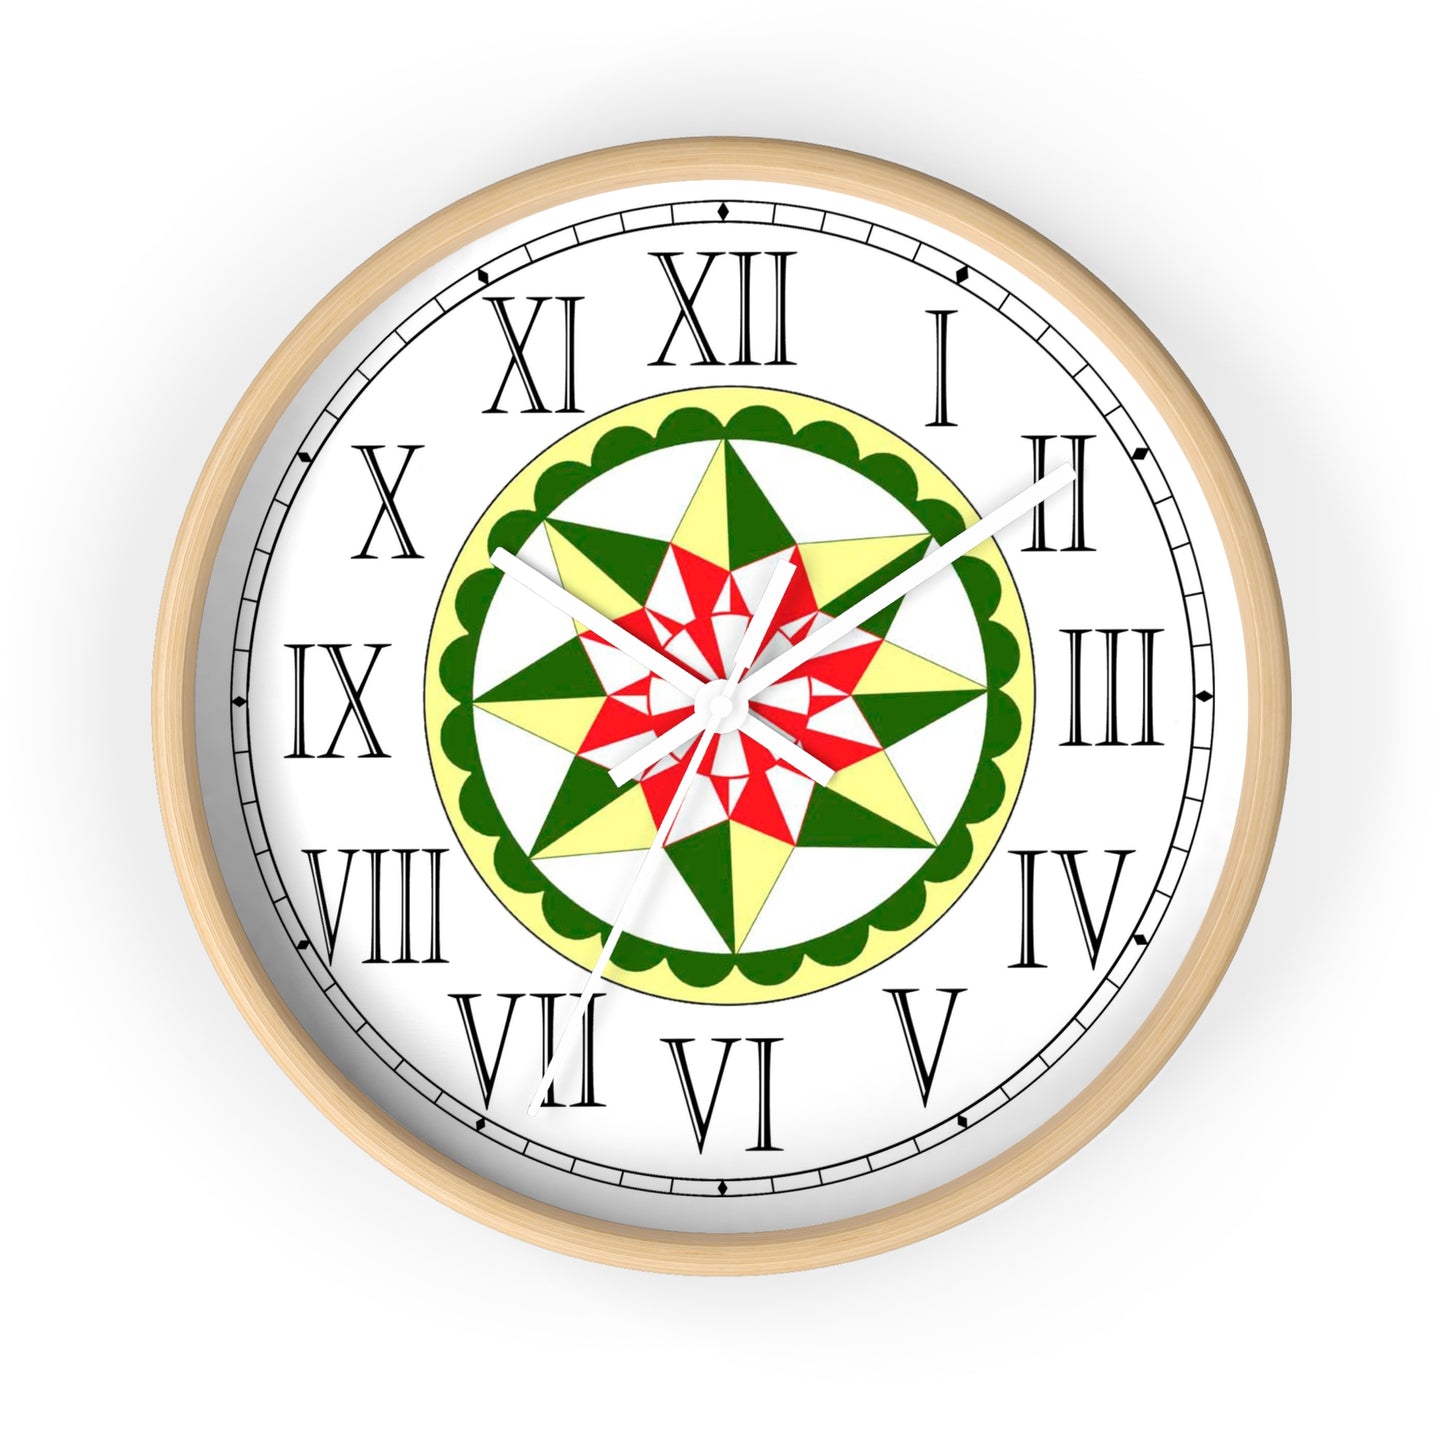 Morning Star Folk Art Design Roman Numeral Clock